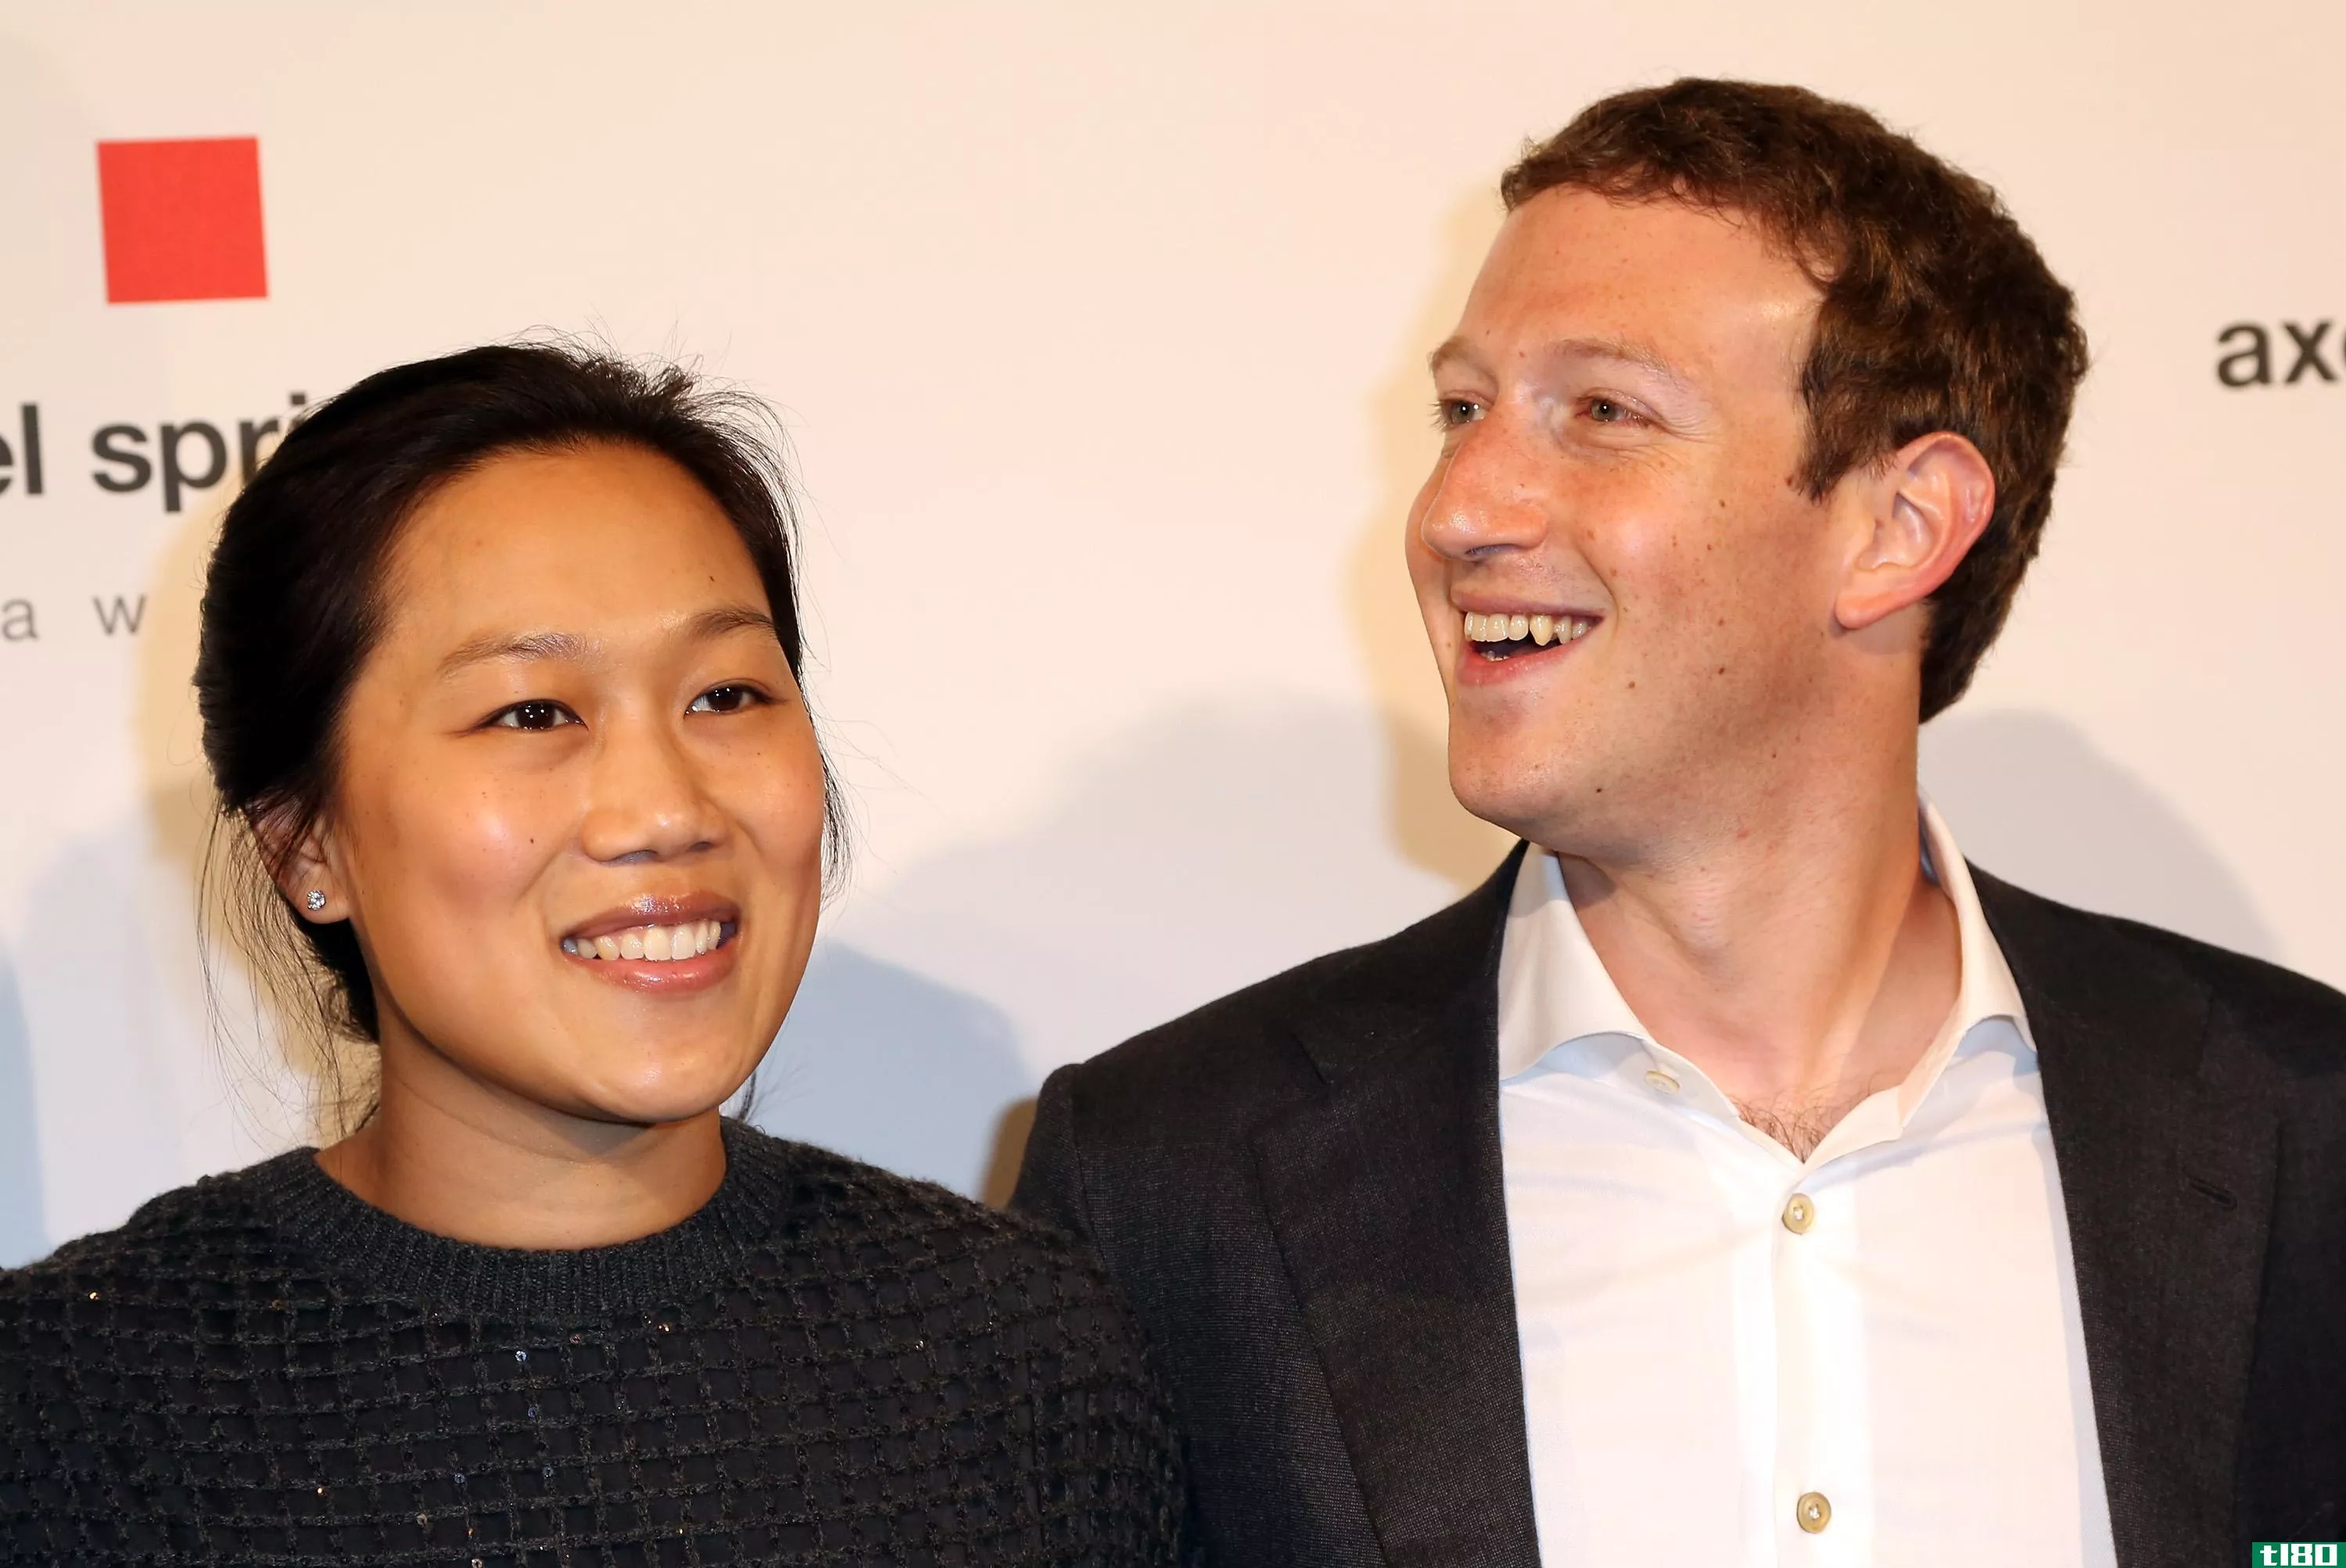 facebook ceo扎克伯格今年将休两个月的陪产假